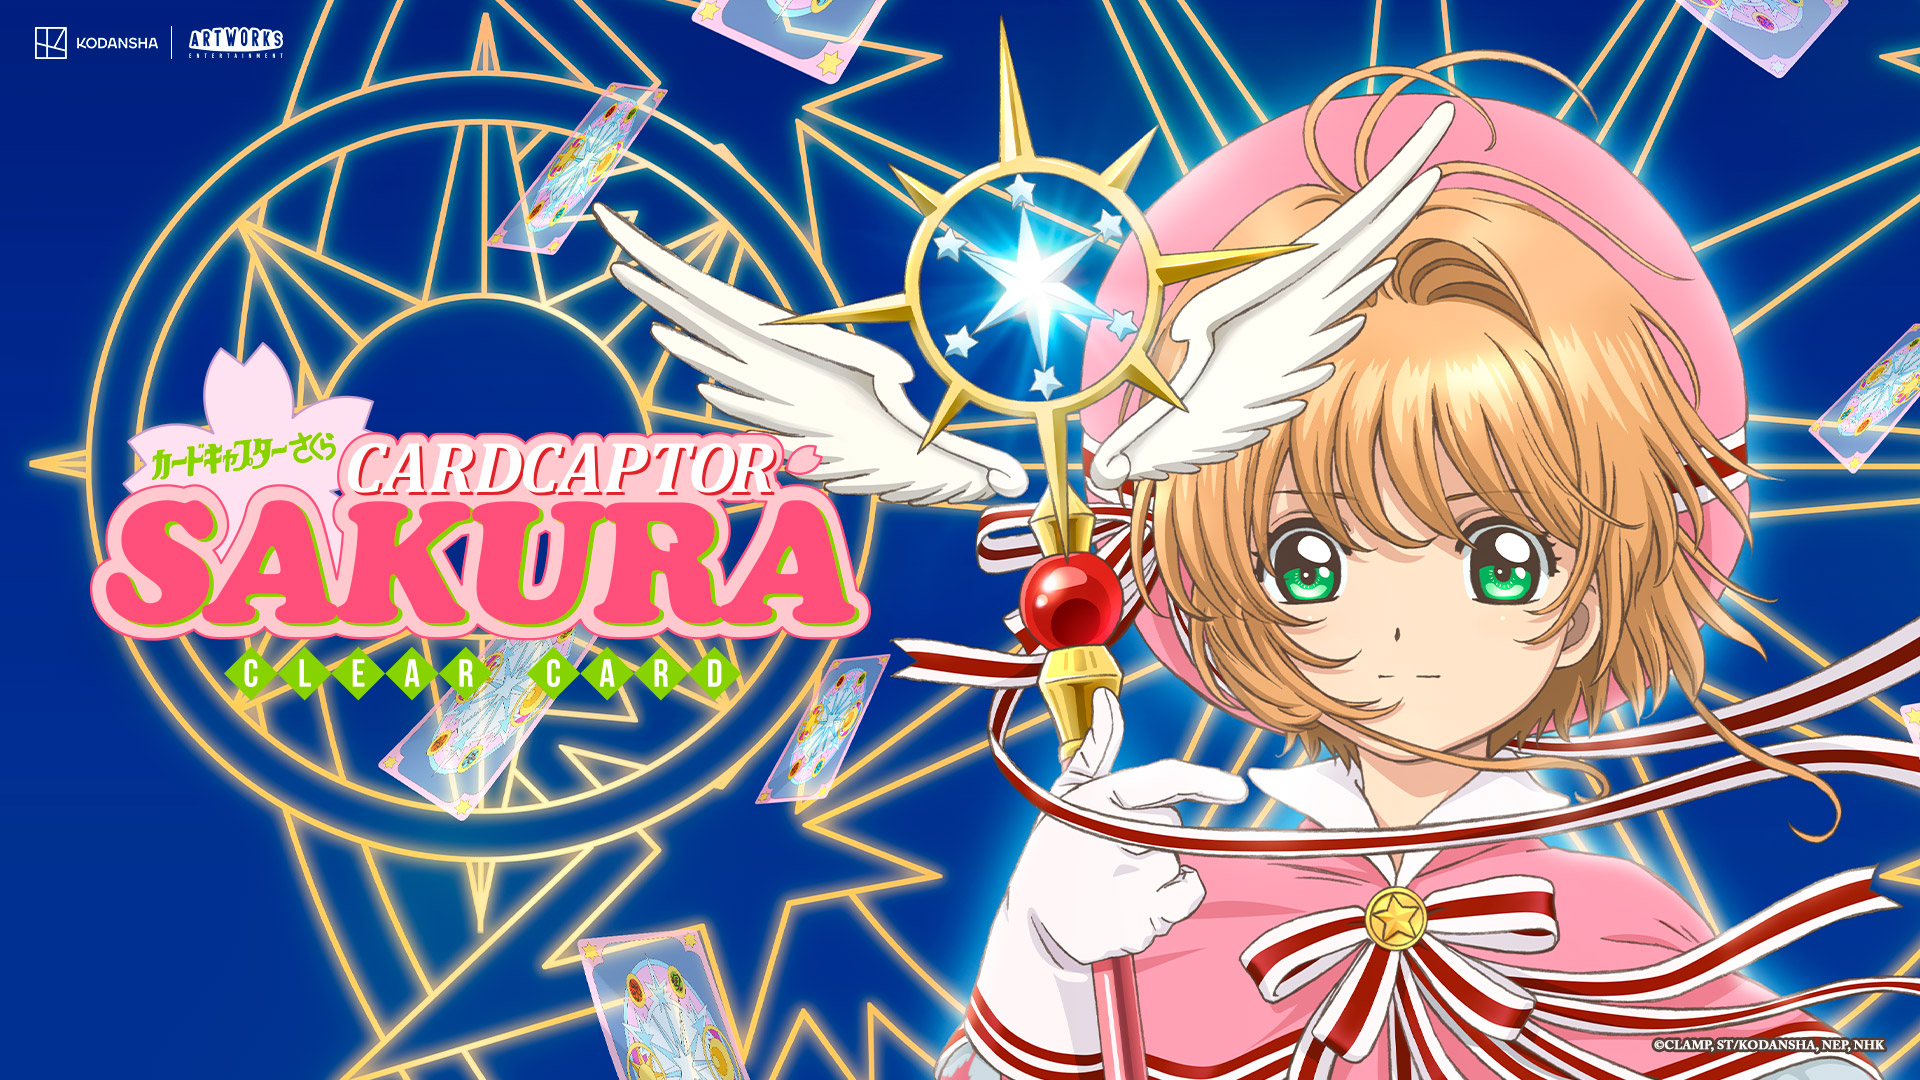 Sakura card captor, trailer dublado oficial, #trailer #anime #trailerd